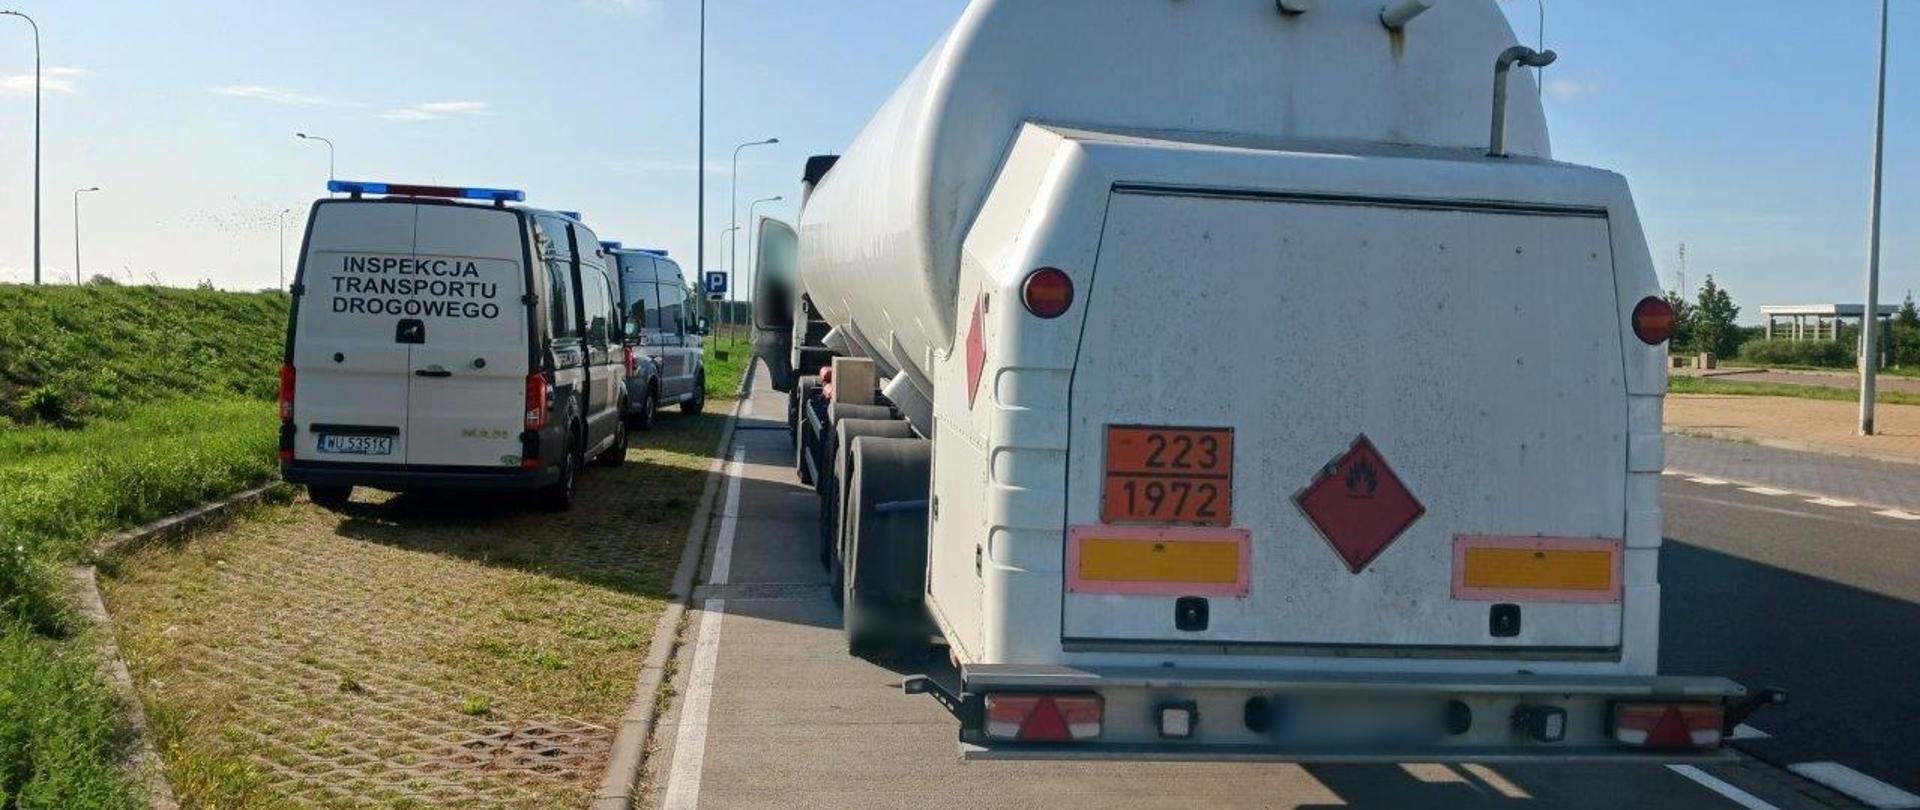 Ciężarówkę przewożącą gaz prowadził kierowca po spożyciu alkoholu. Został zatrzymany do kontroli przez inspektorów zachodniopomorskiej Inspekcji Transportu Drogowego na ekspresowej „trójce” w pobliżu Kunowa.